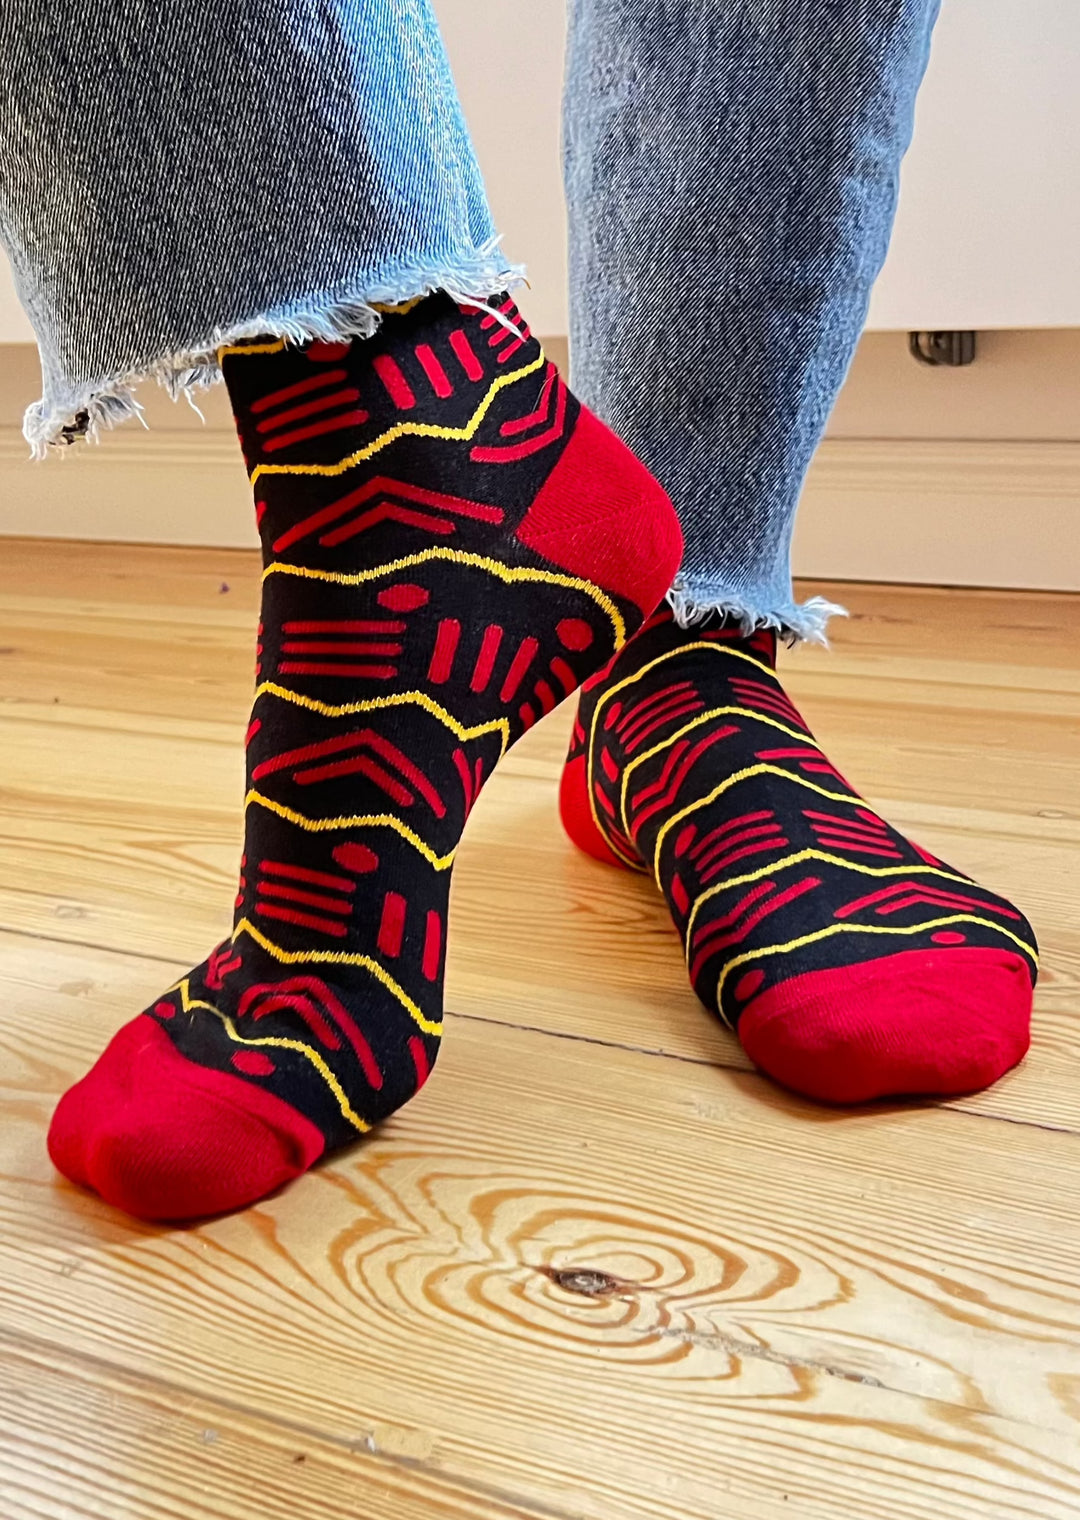 Socks from Kenya